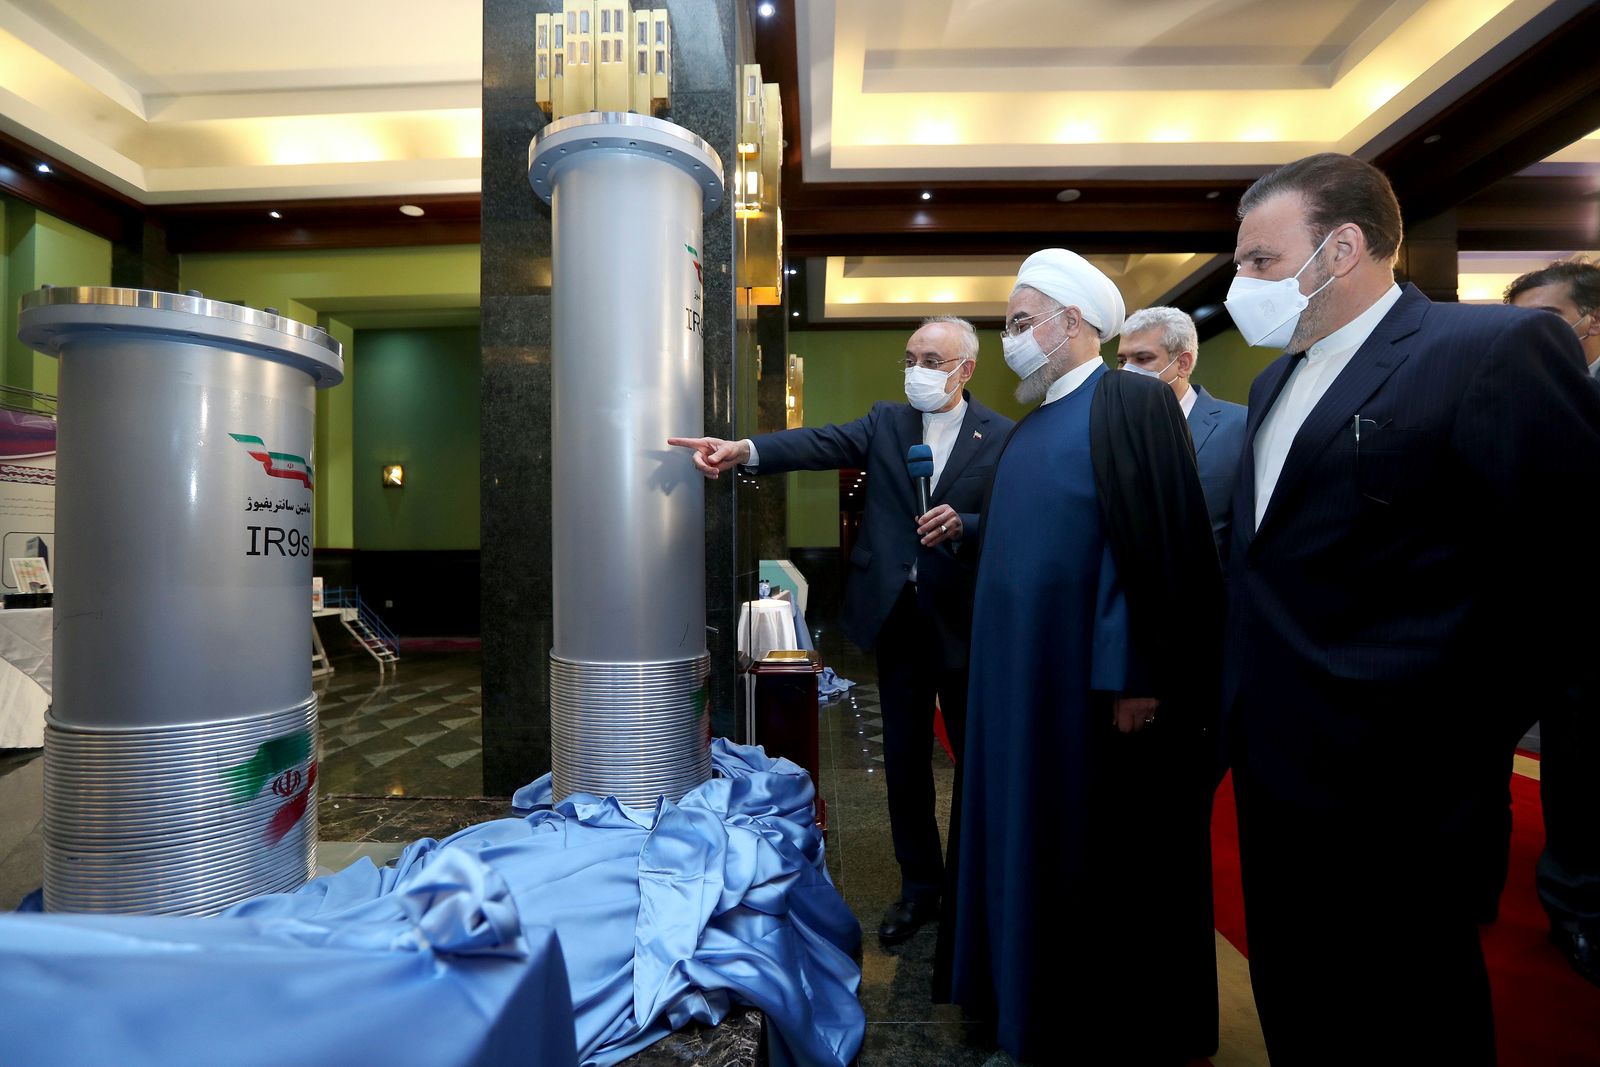 الرئيس الإيراني حسن روحاني يستمع إلى رئيس منظمة الطاقة الذرية الإيرانية علي أكبر صالحي، أثناء زيارته معرضاً للإنتاج النووي في طهران - 10 أبريل 2021 - AP